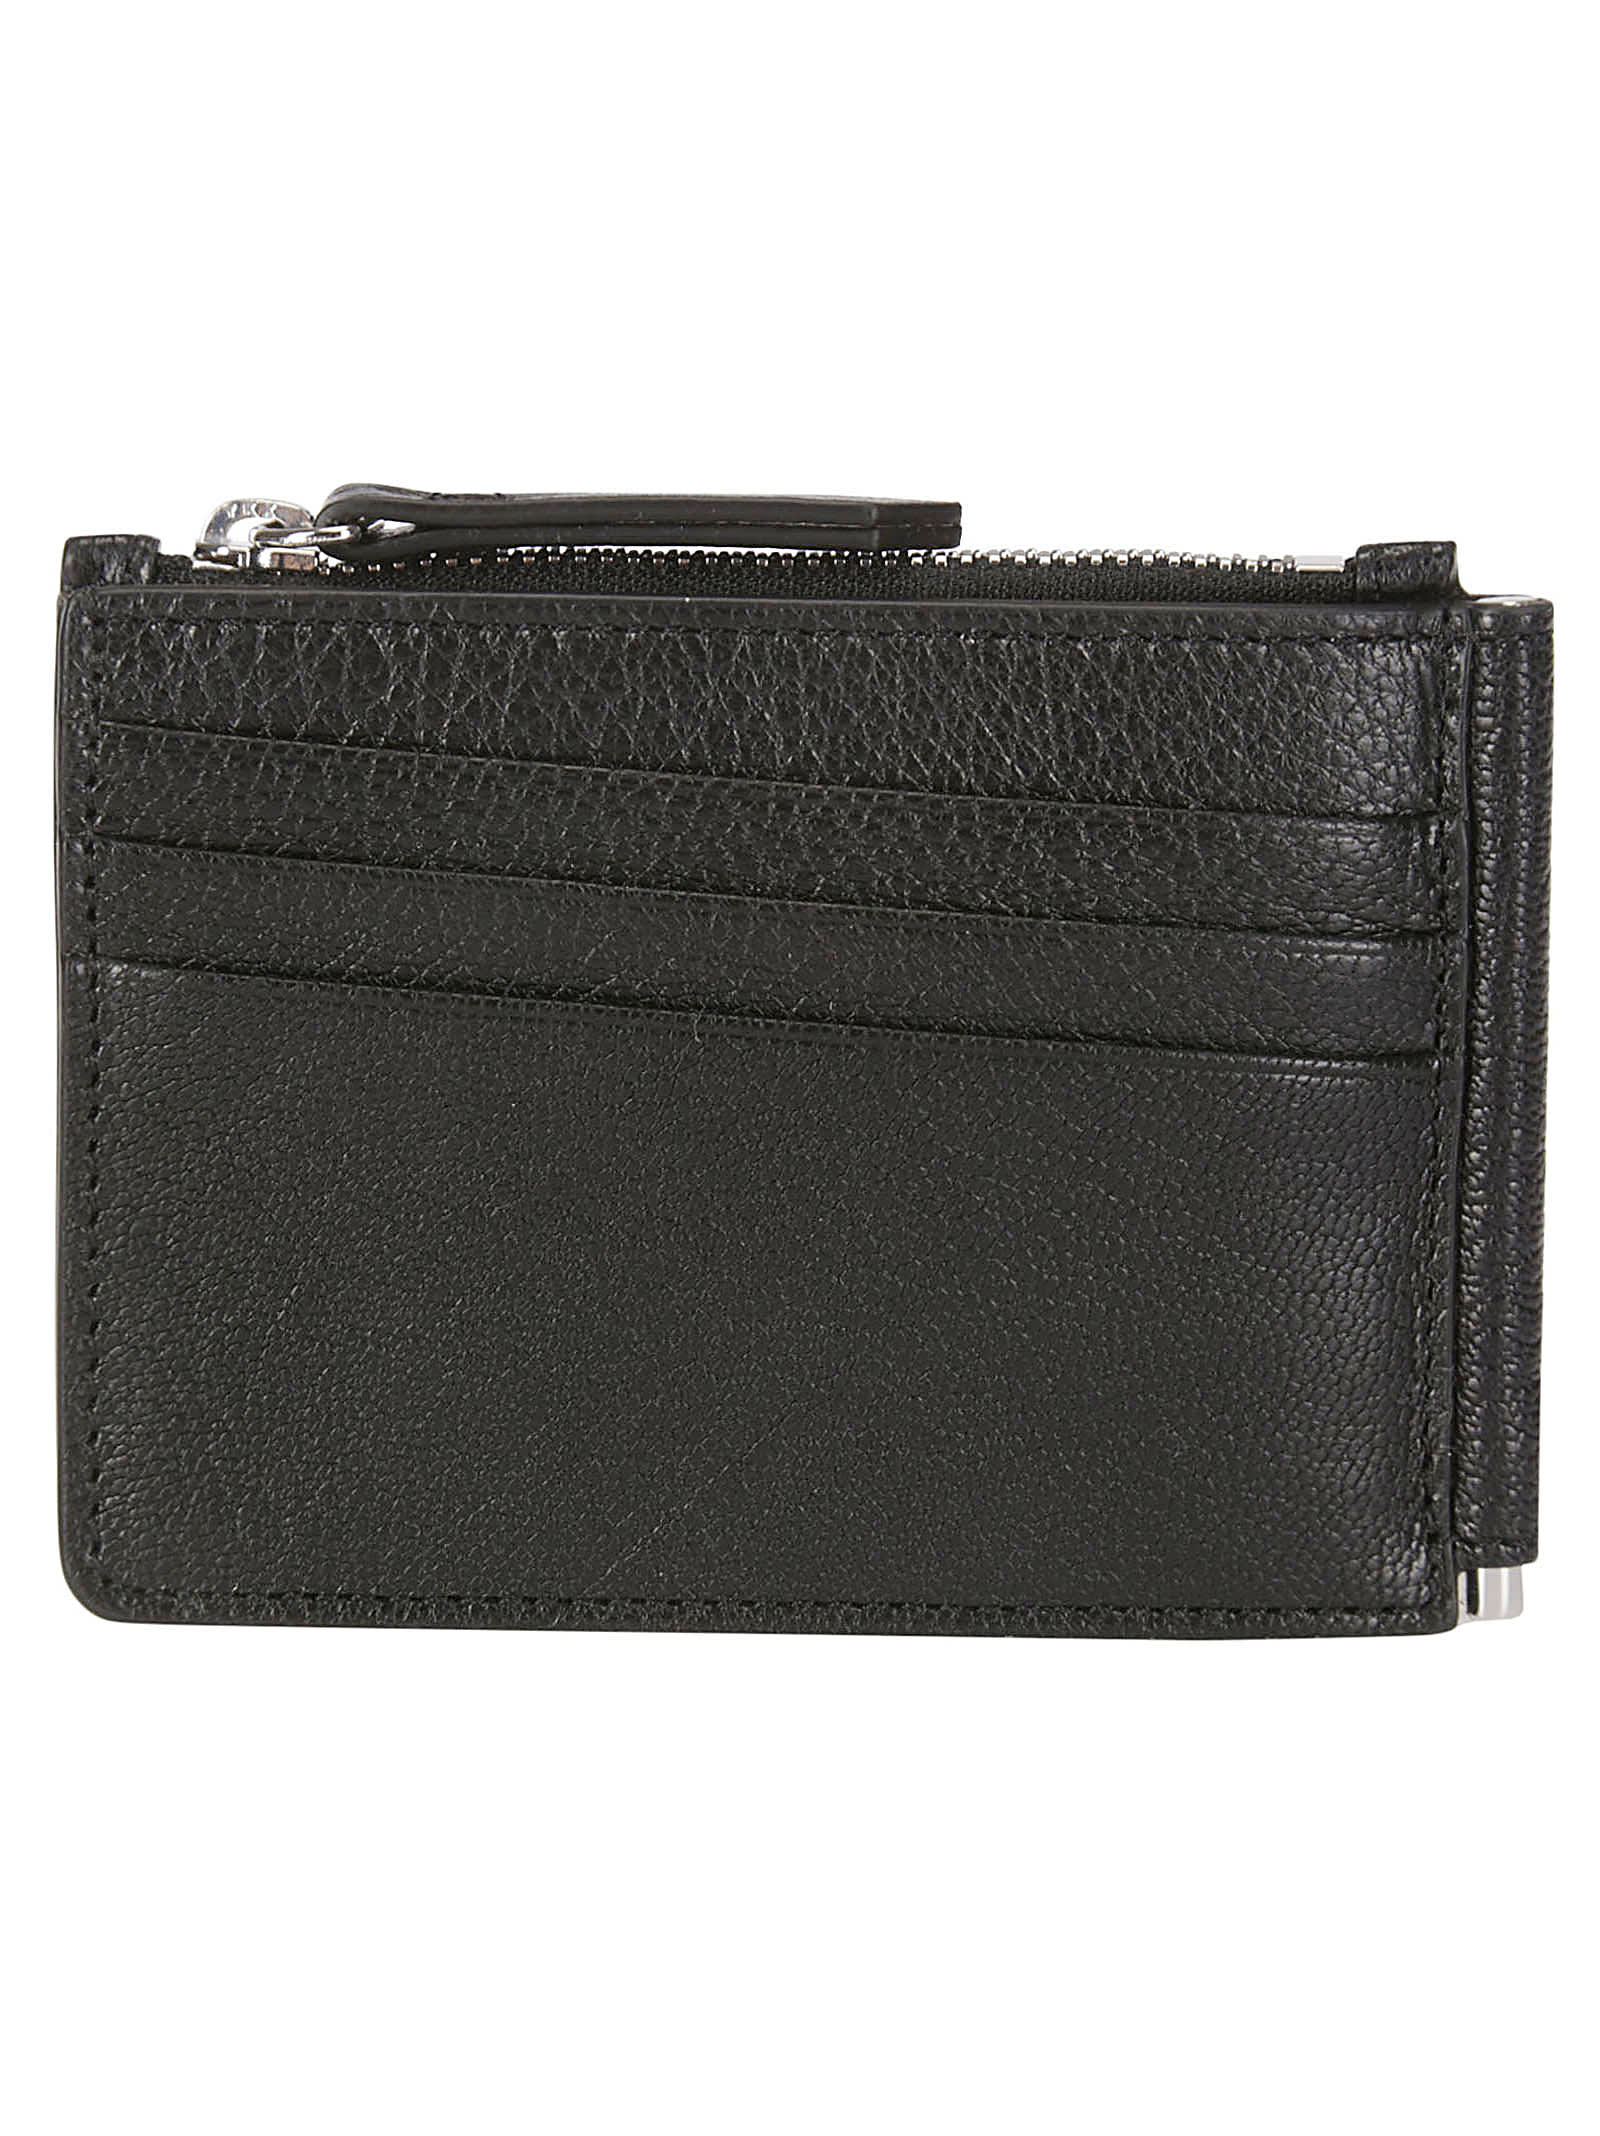 Shop Maison Margiela Wallet Slim 2 Pincer In Black